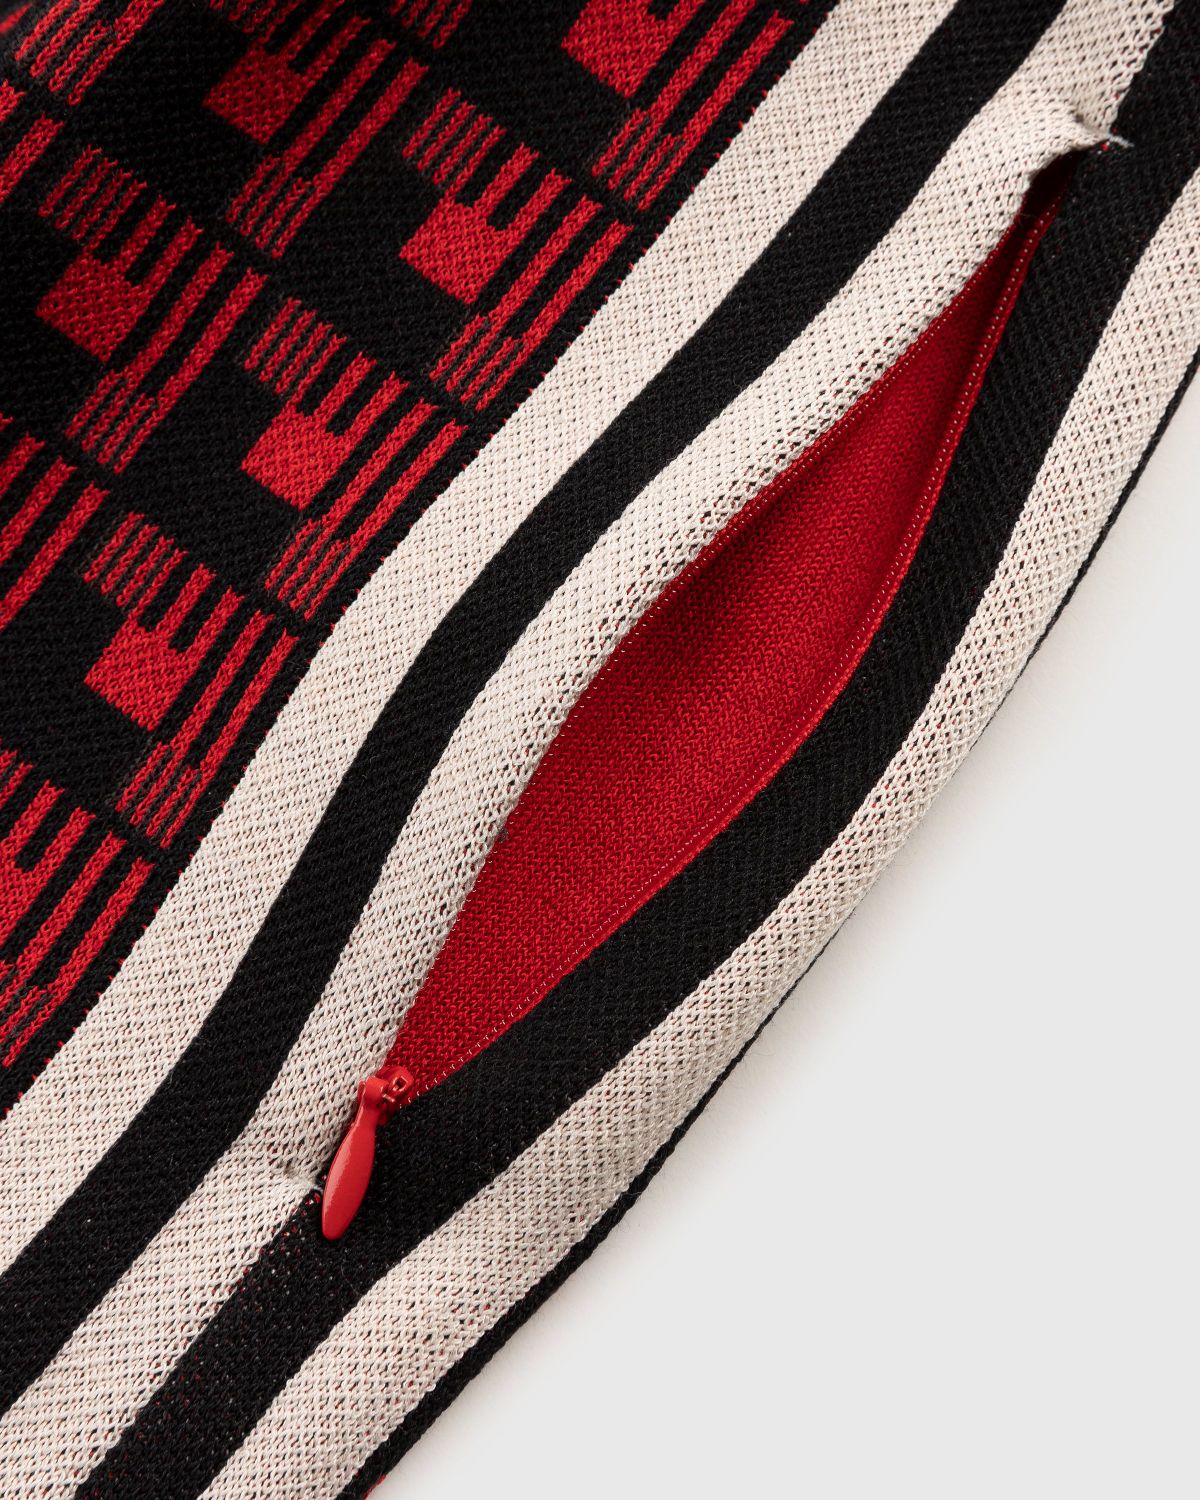 Adidas x Wales Bonner – WB Knit Shorts Scarlet/Black - Shorts - Red - Image 4